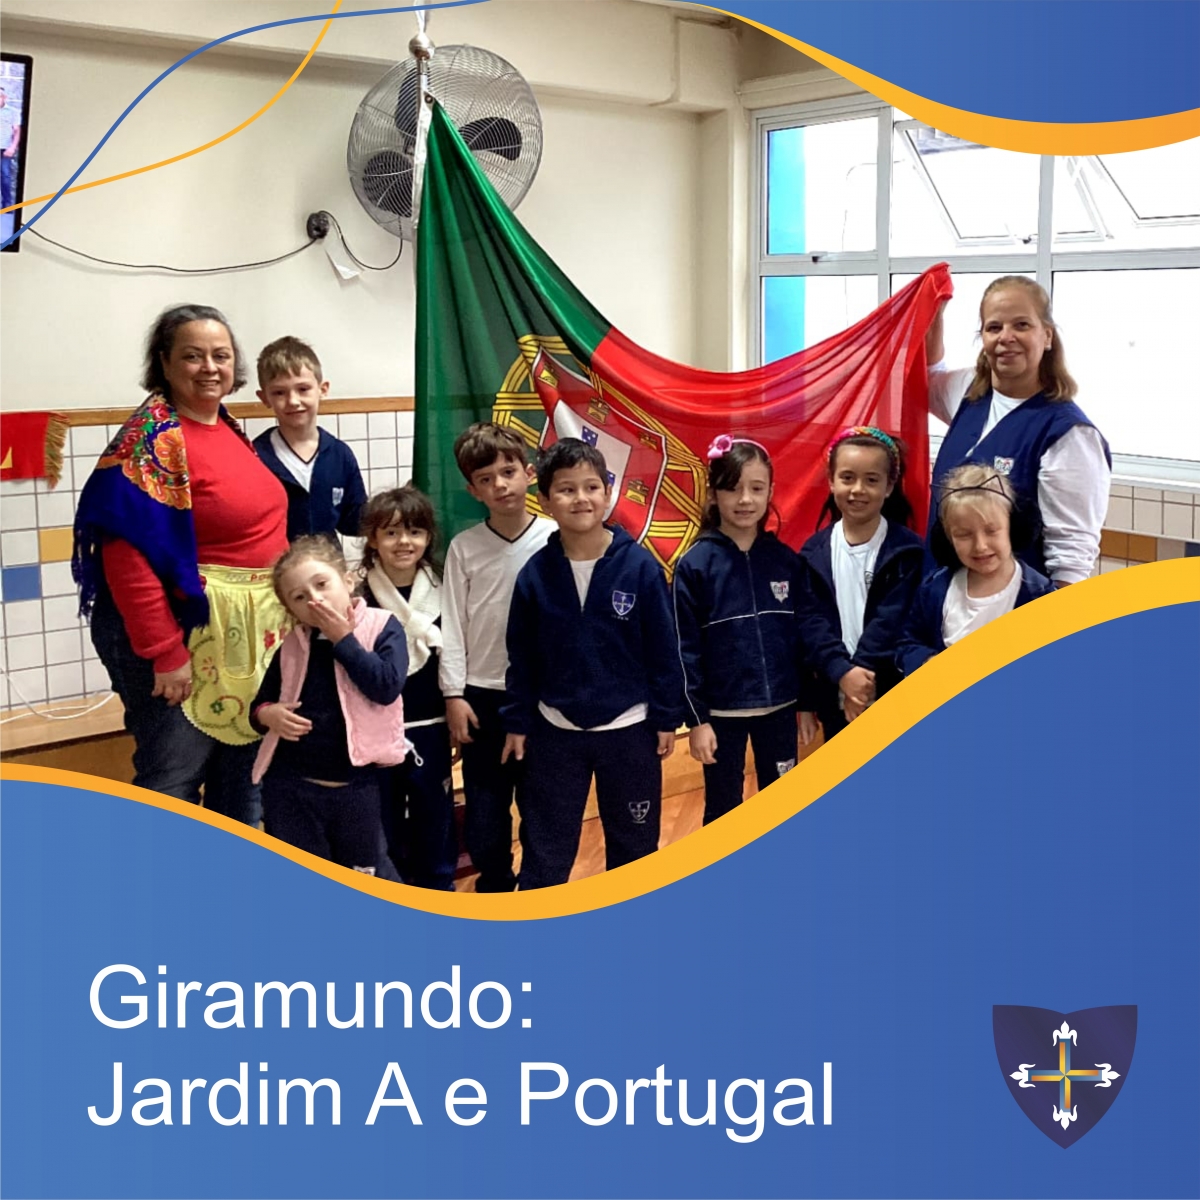 Giramundo: Jardim A e Portugal